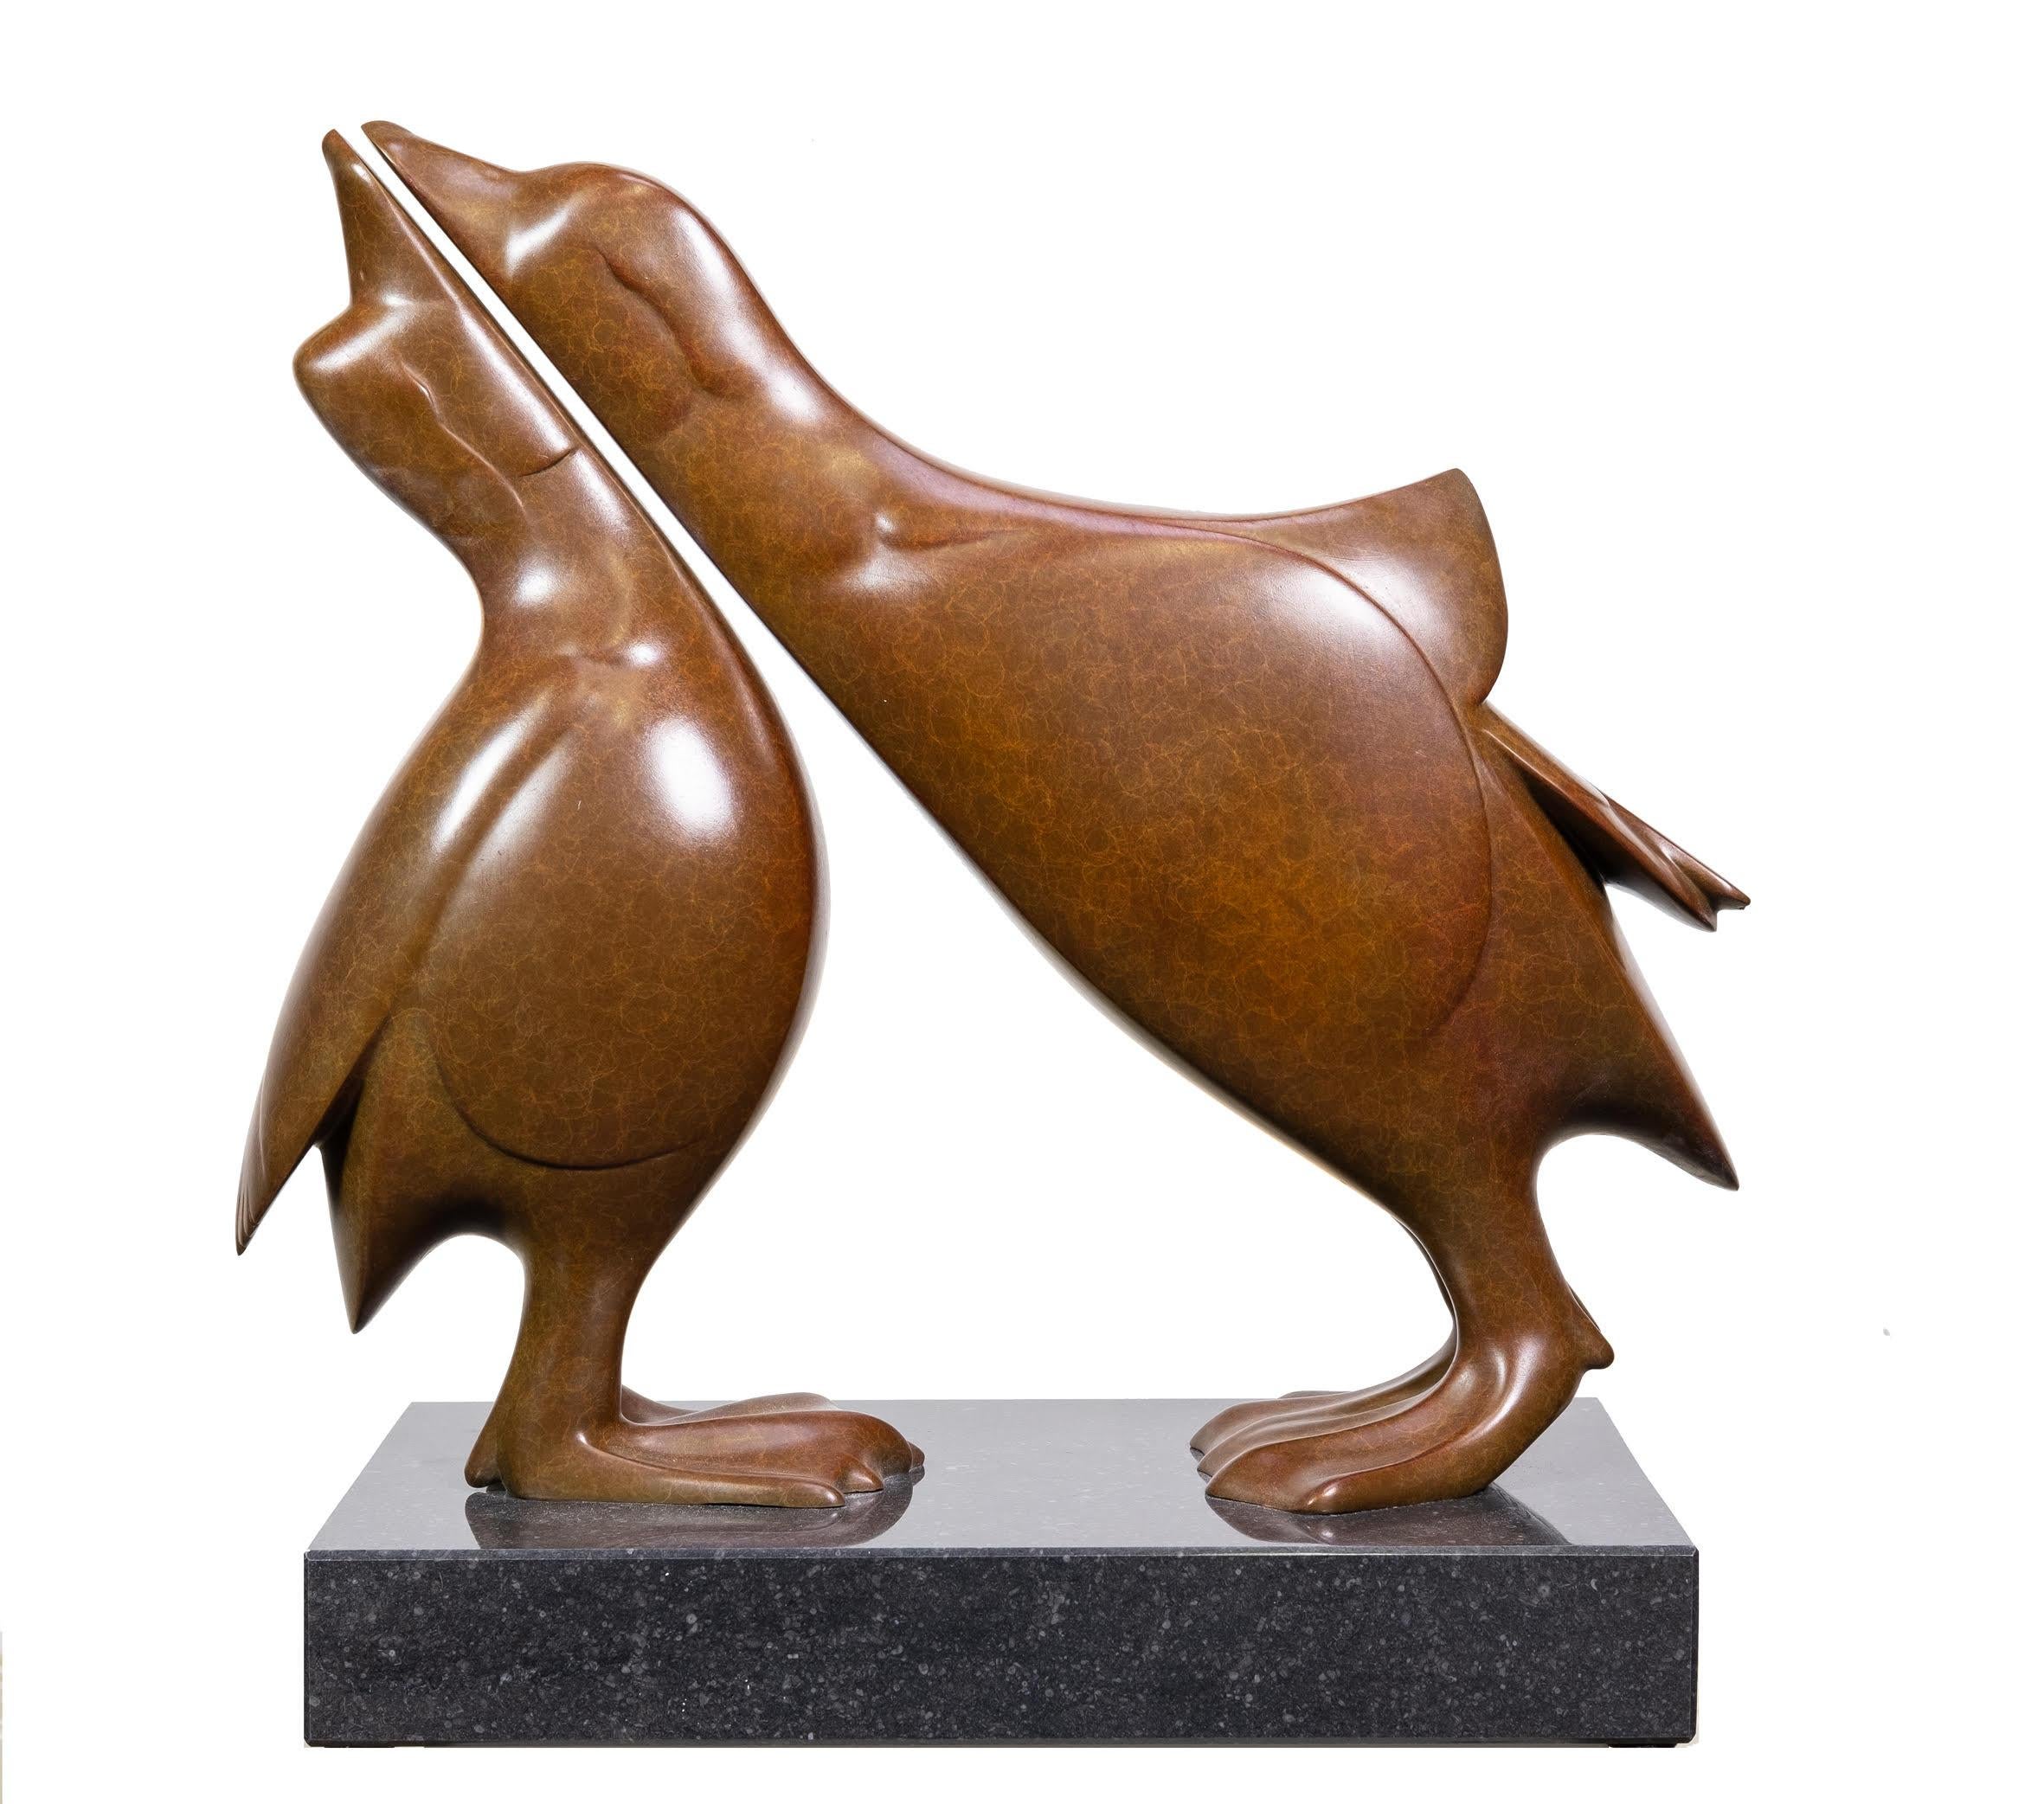 Evert den Hartog Figurative Sculpture - Twee Mandarijneendjes Mandarin Ducks Small Bronze Sculpture Love Birds In Stock 